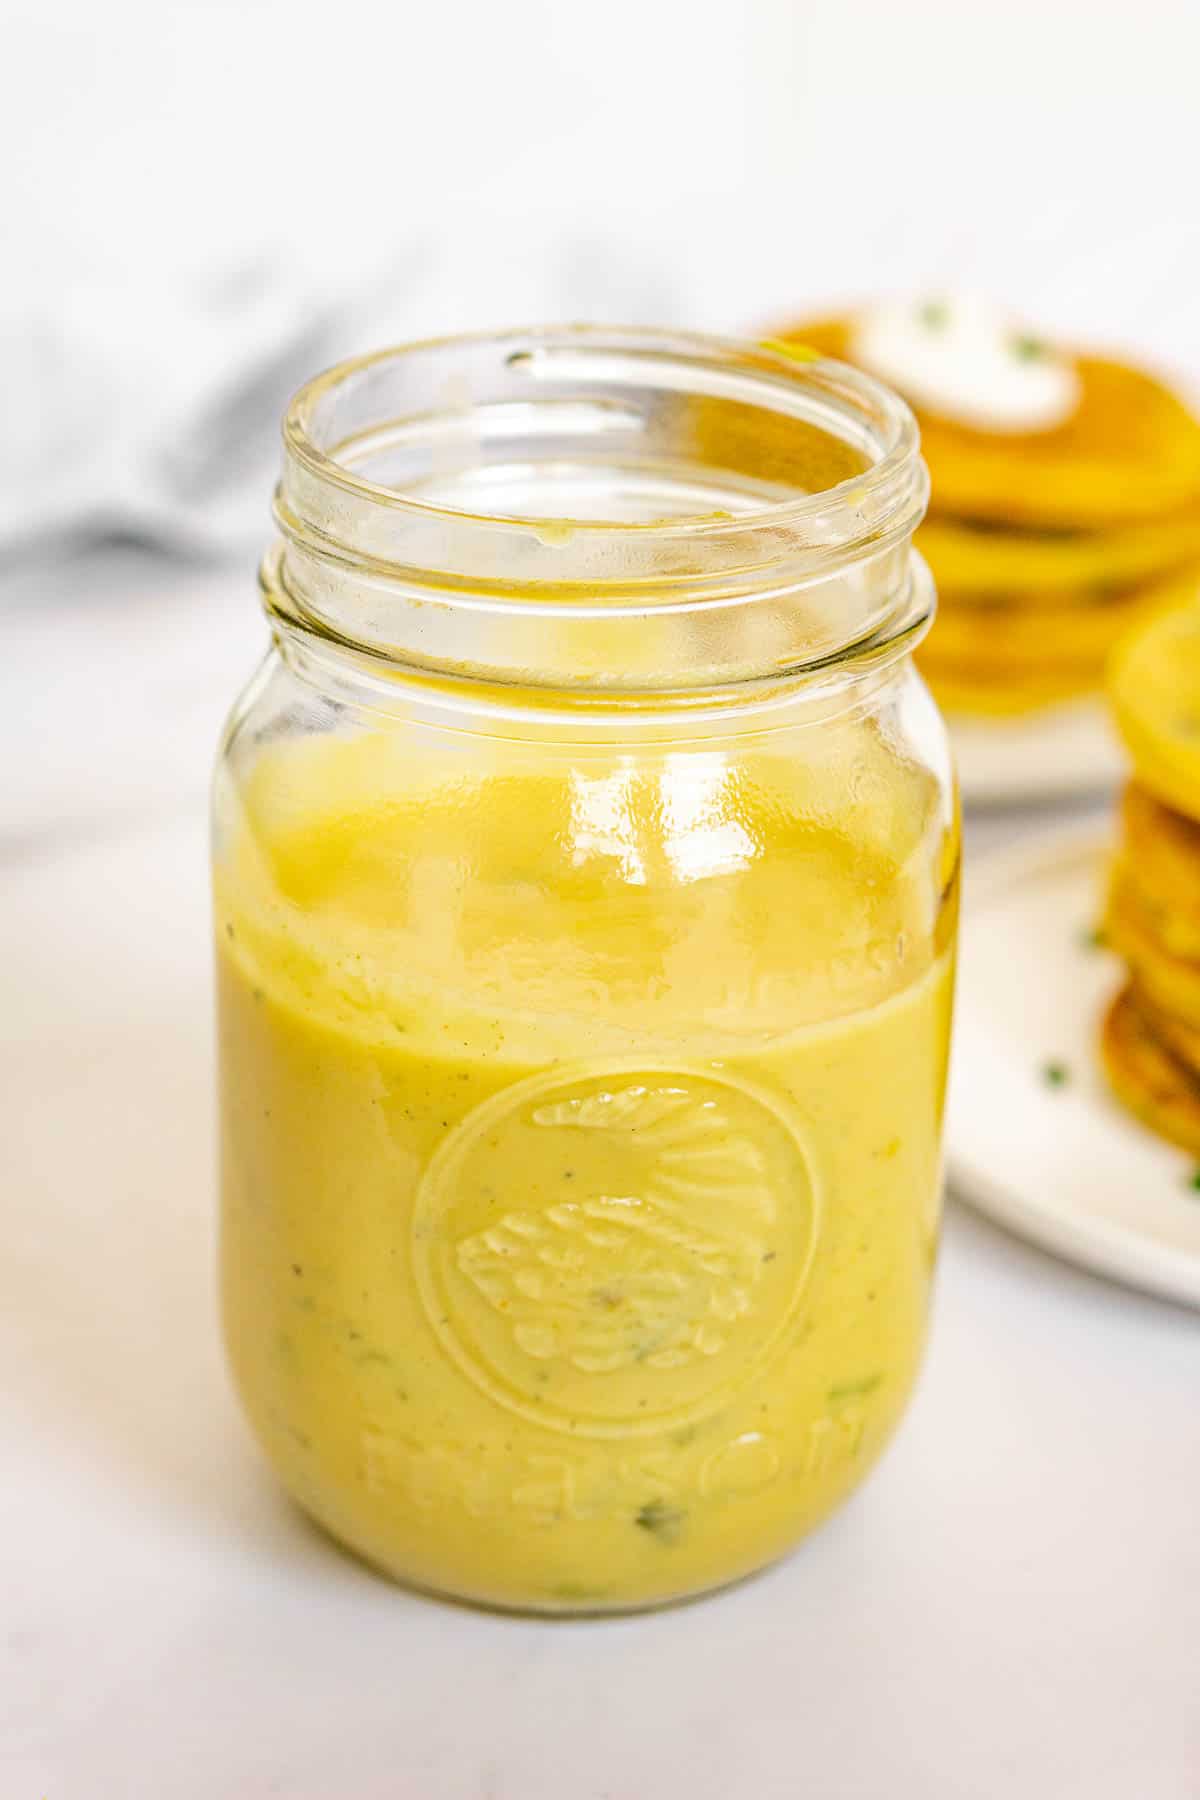 Vegan mung bean pancake batter in a mason jar